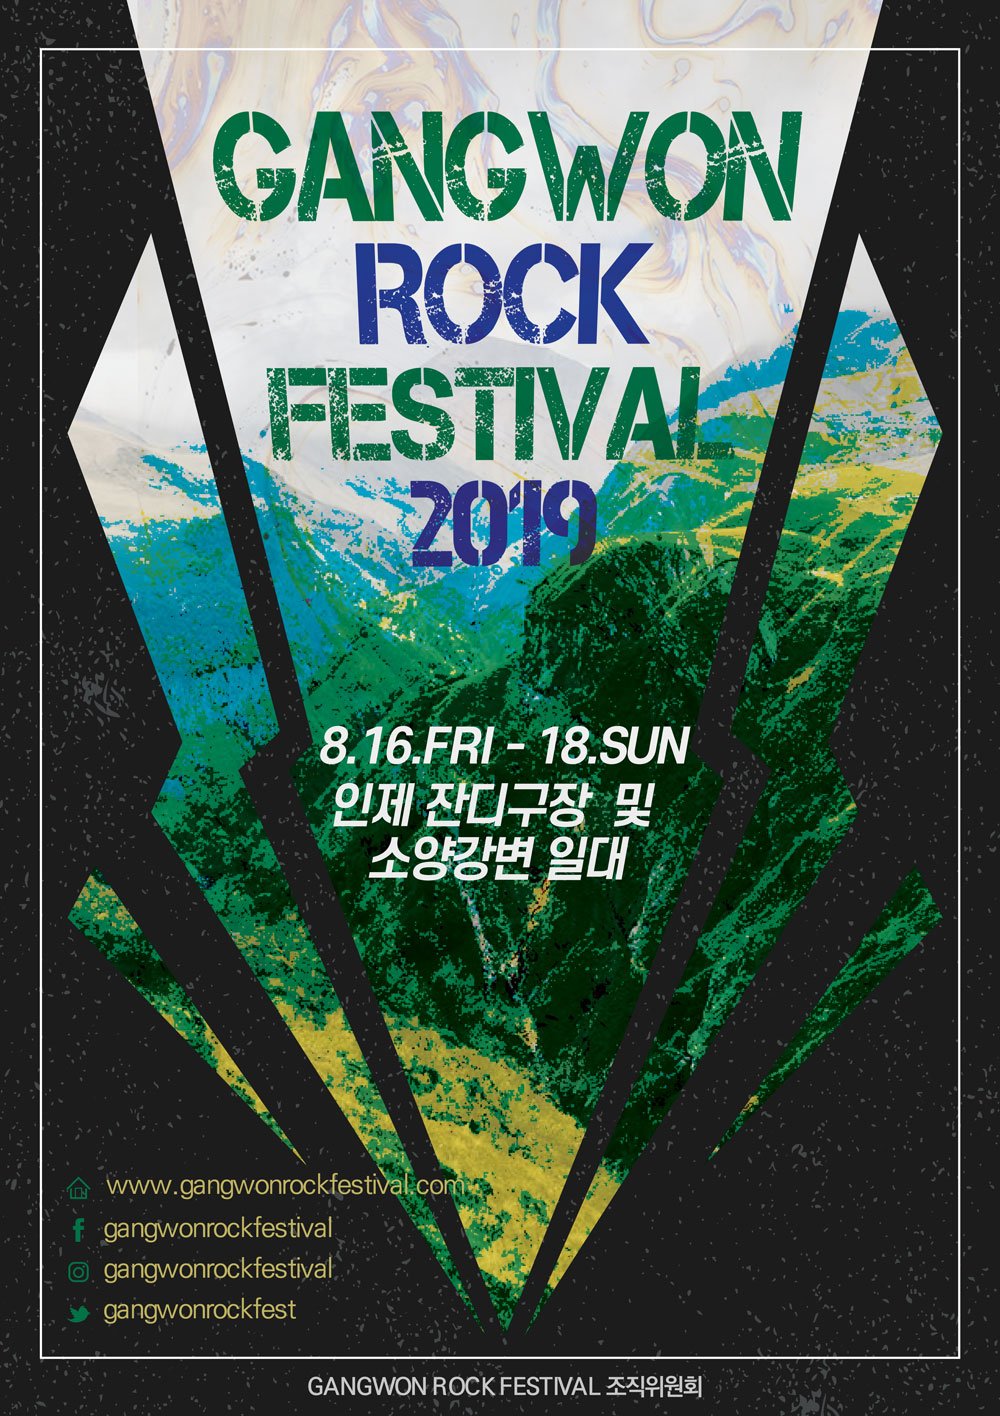 【韓国】GANGWON ROCK FESTIVAL 2019 (韓国 江原道インジェ芝生球場及び昭陽江)